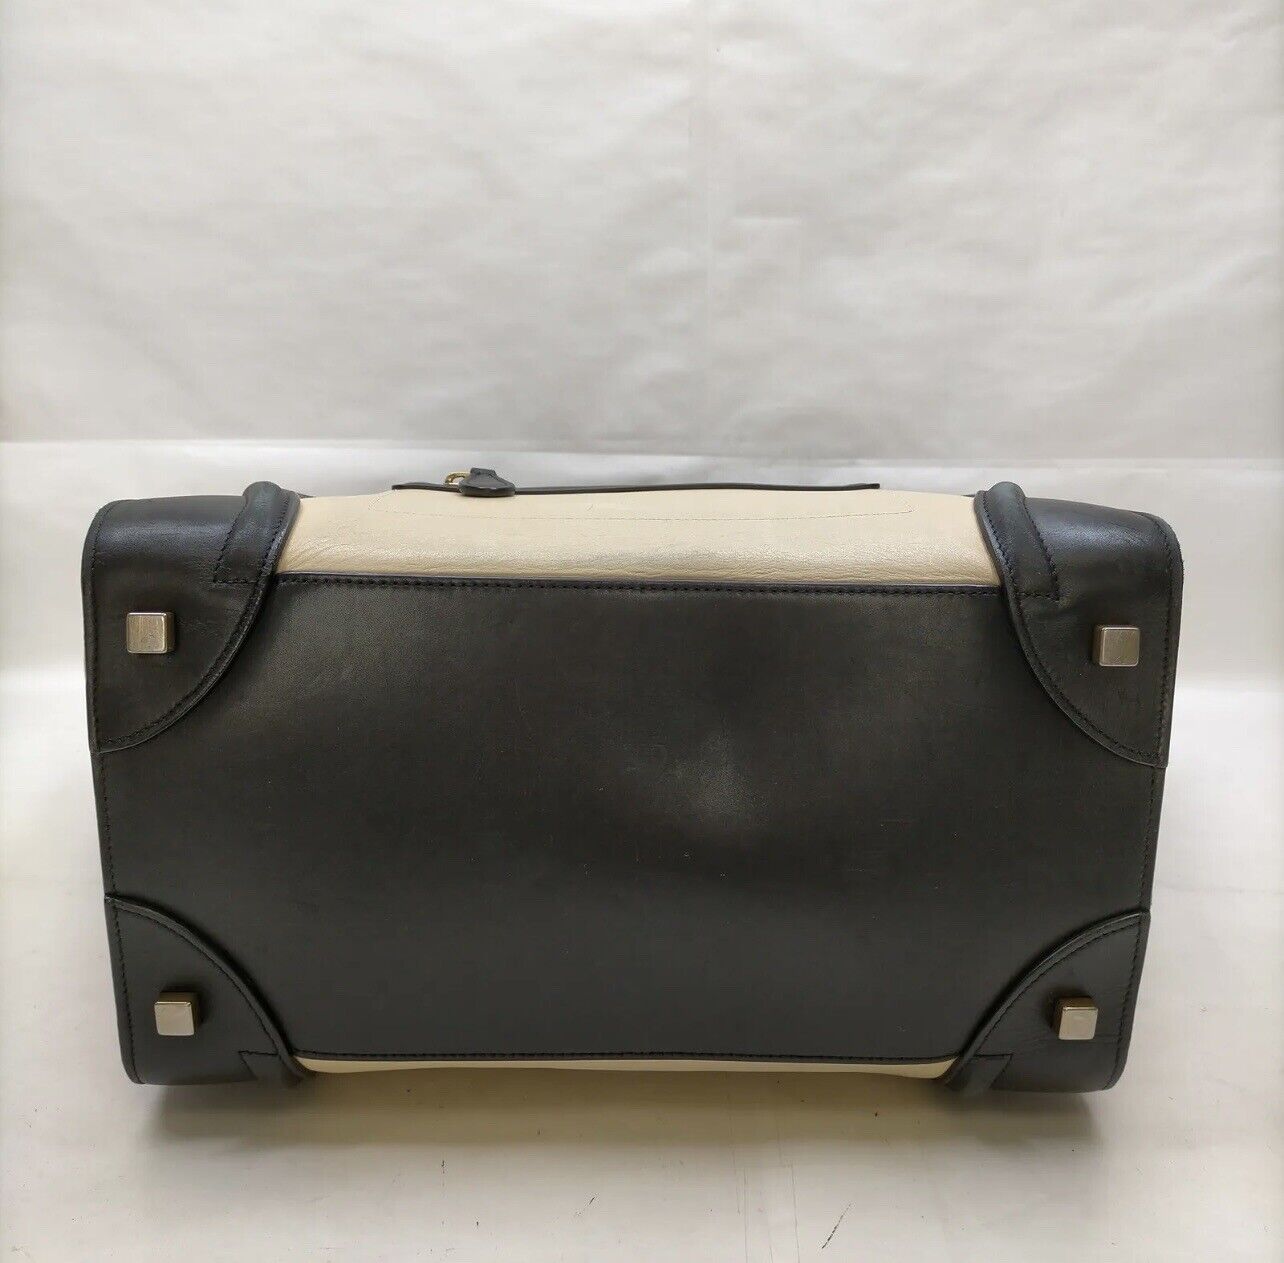 Celine Phantom Medium Luggage Bag - image 5